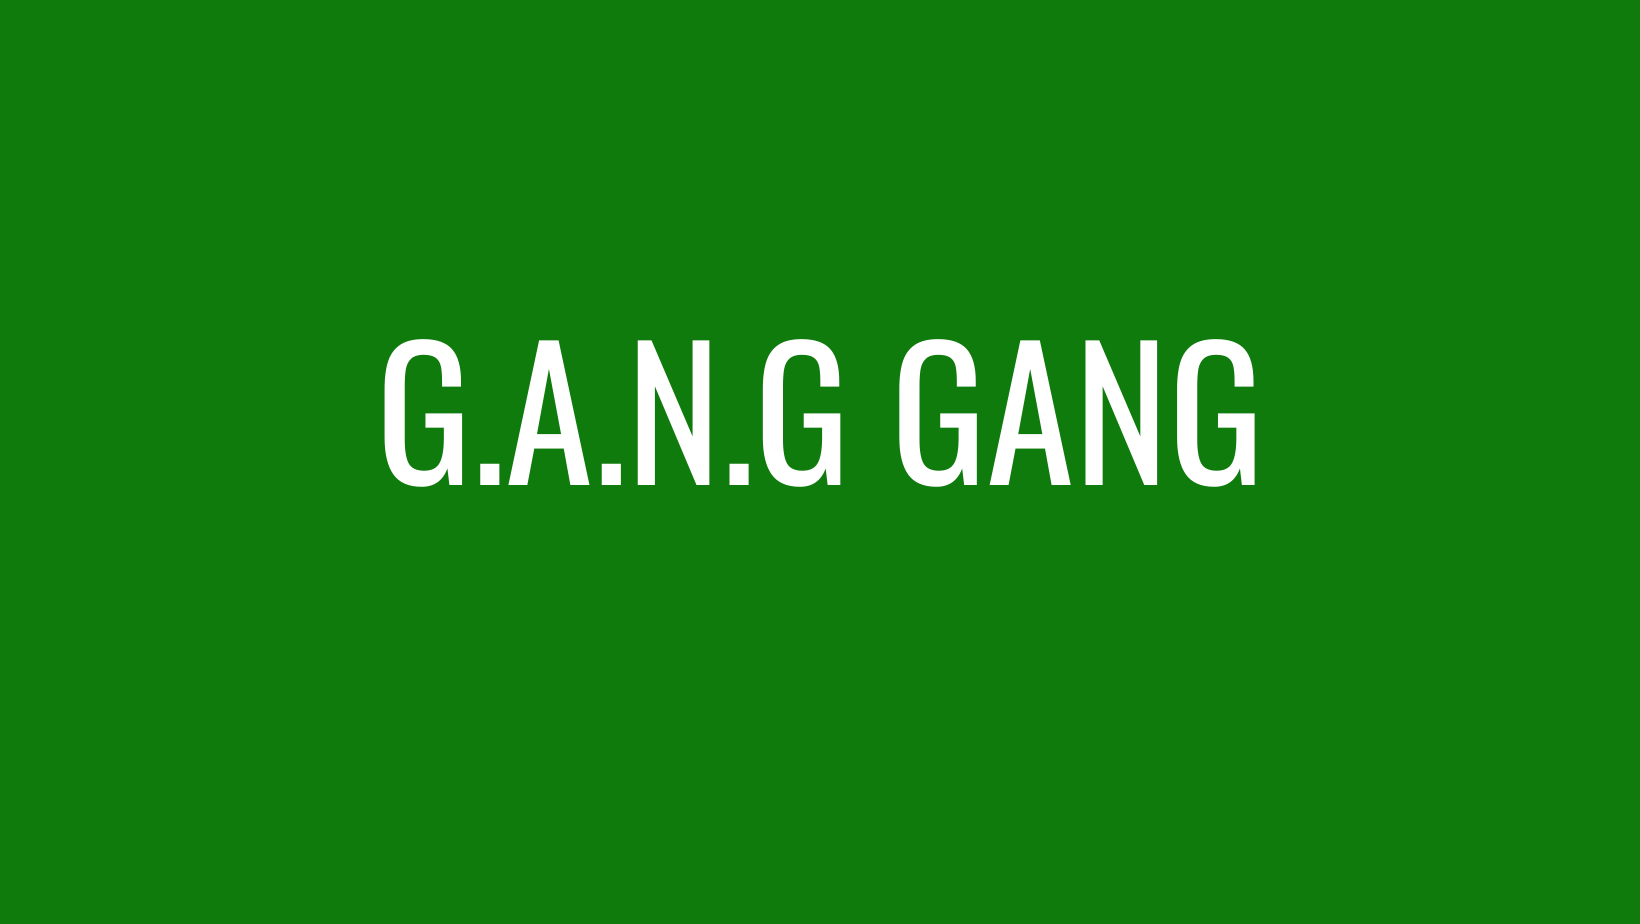 G.A.N.G. GANG – RADIO SKID ROW – 88.9FM